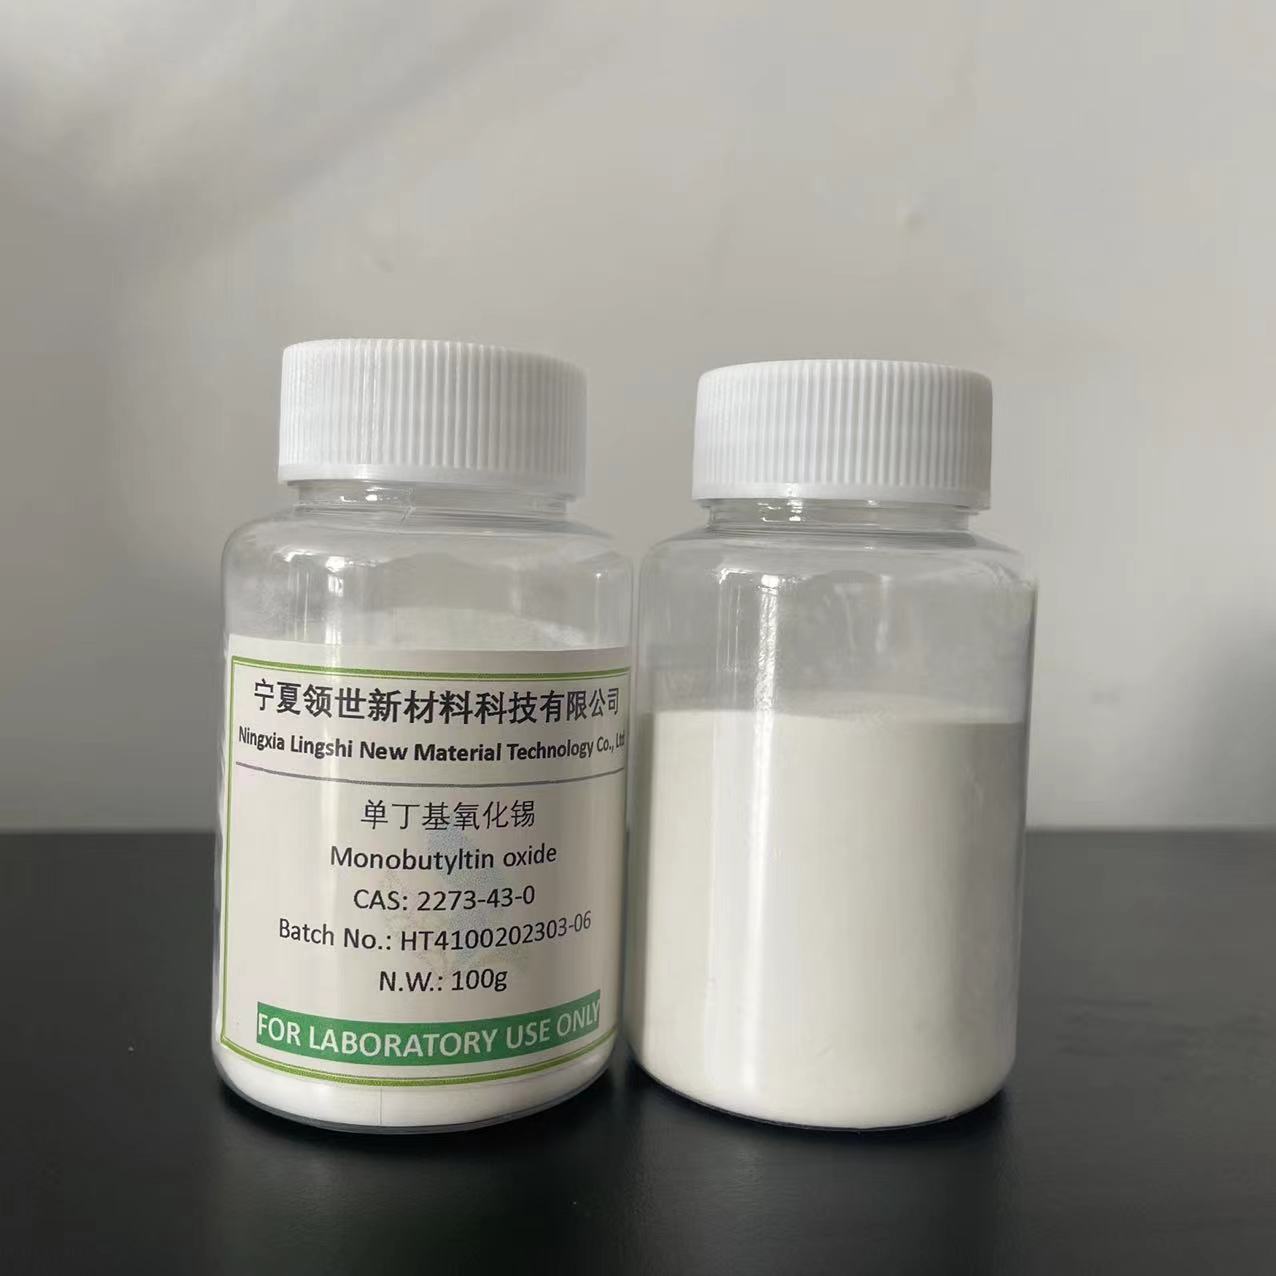 Monobutyltin oxide (MBTO)